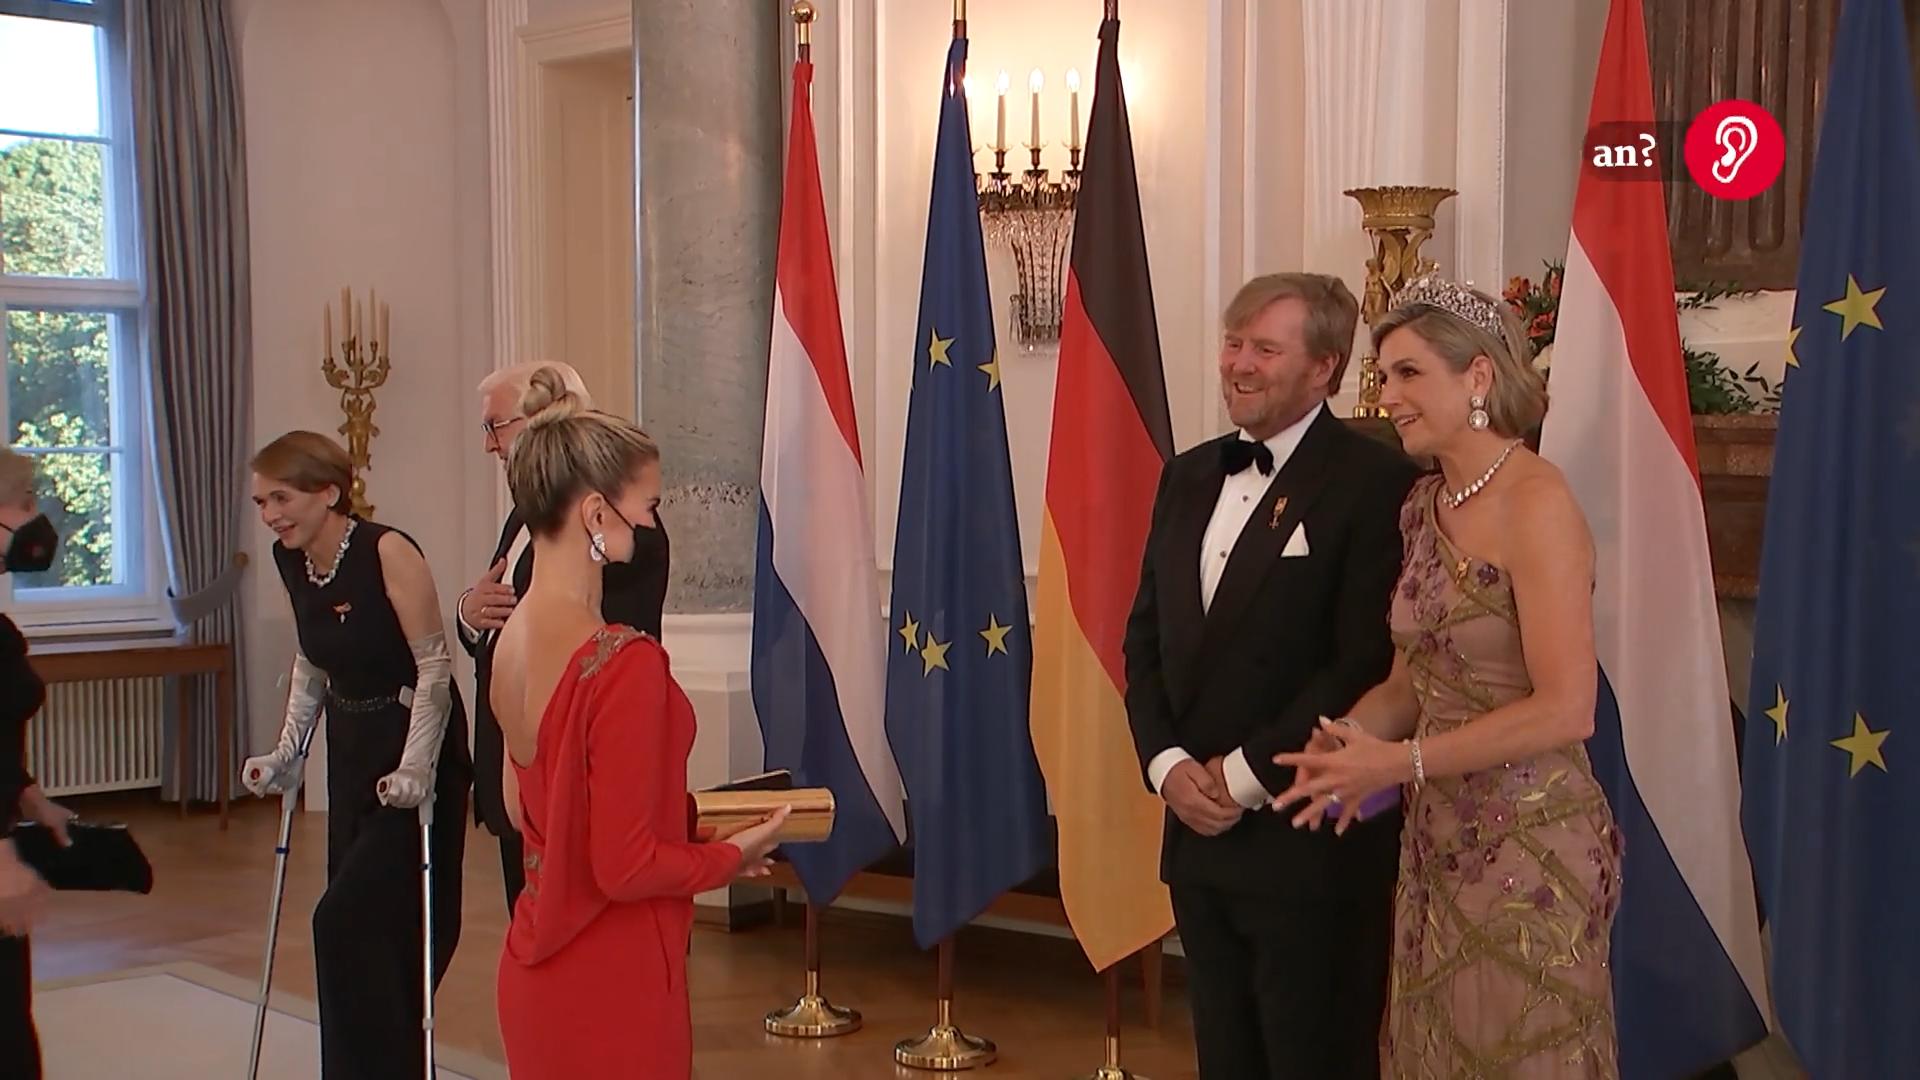 Sylvie Meis trifft niederländisches Königspaar Besondere Ehre, die sie "nie vergessen" wird